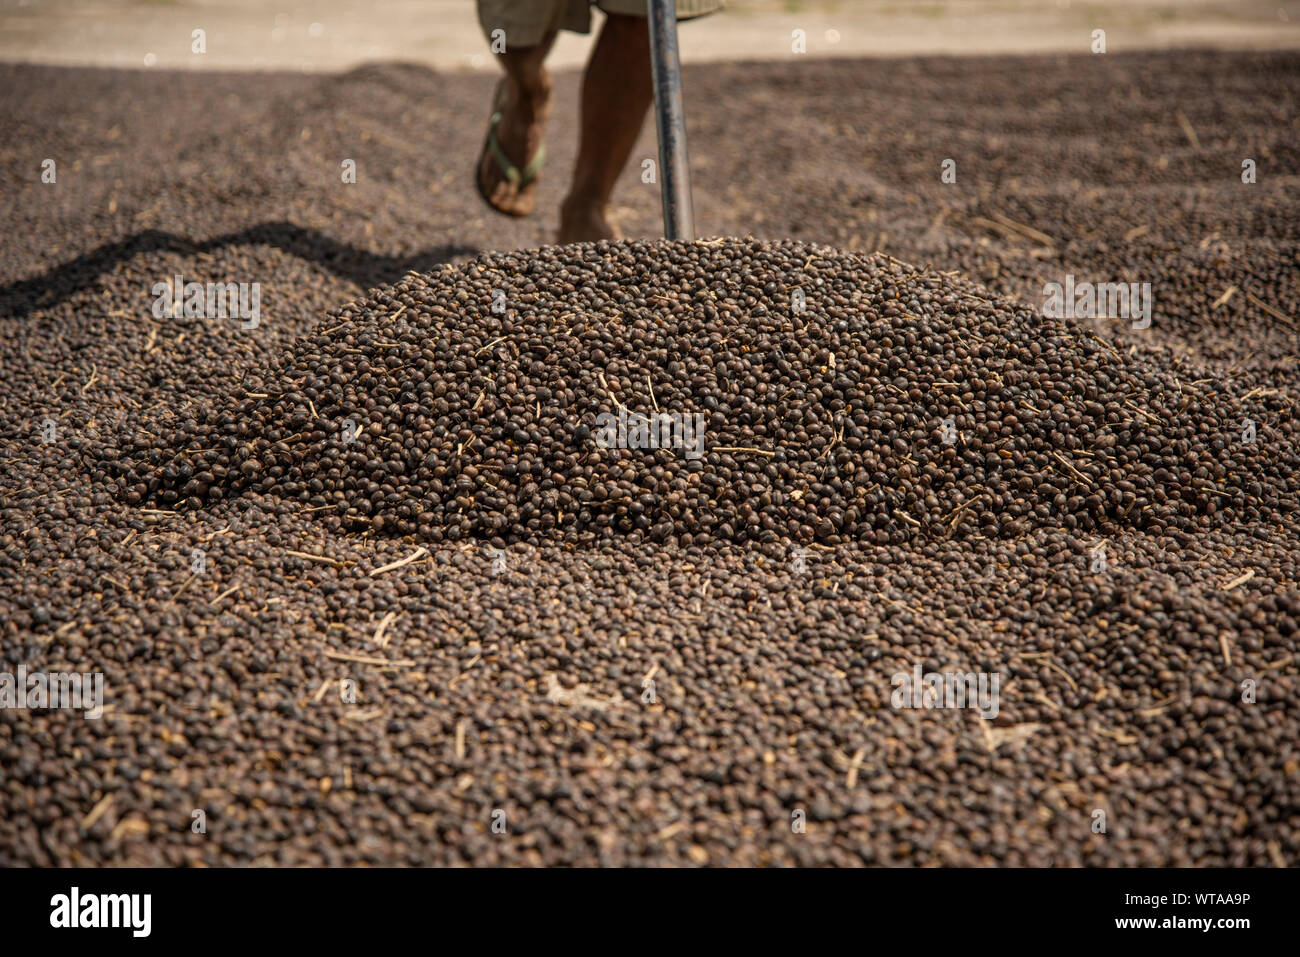 Rastros del trabajador durante el proceso de secado de granos de café en el sudeste de Brasil Foto de stock